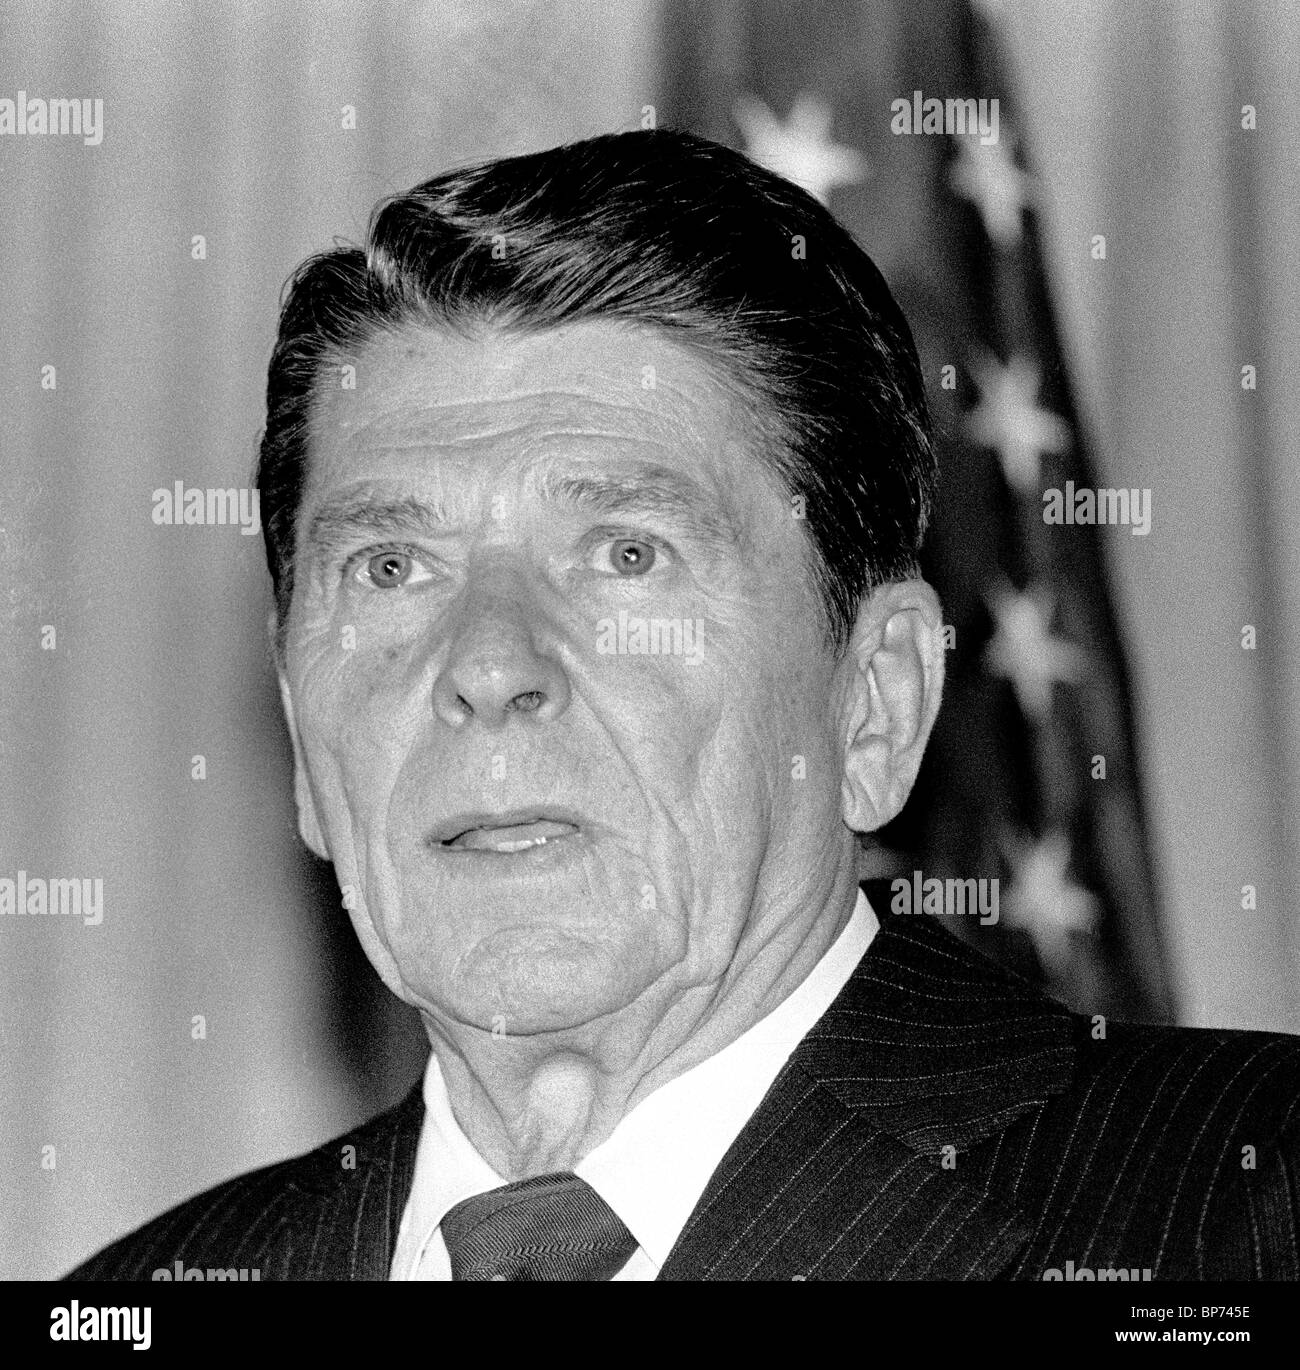 Le président Ronald Reagan lors d'une conférence de presse à San Francisco, Californie, le 9 mai 1980. Banque D'Images